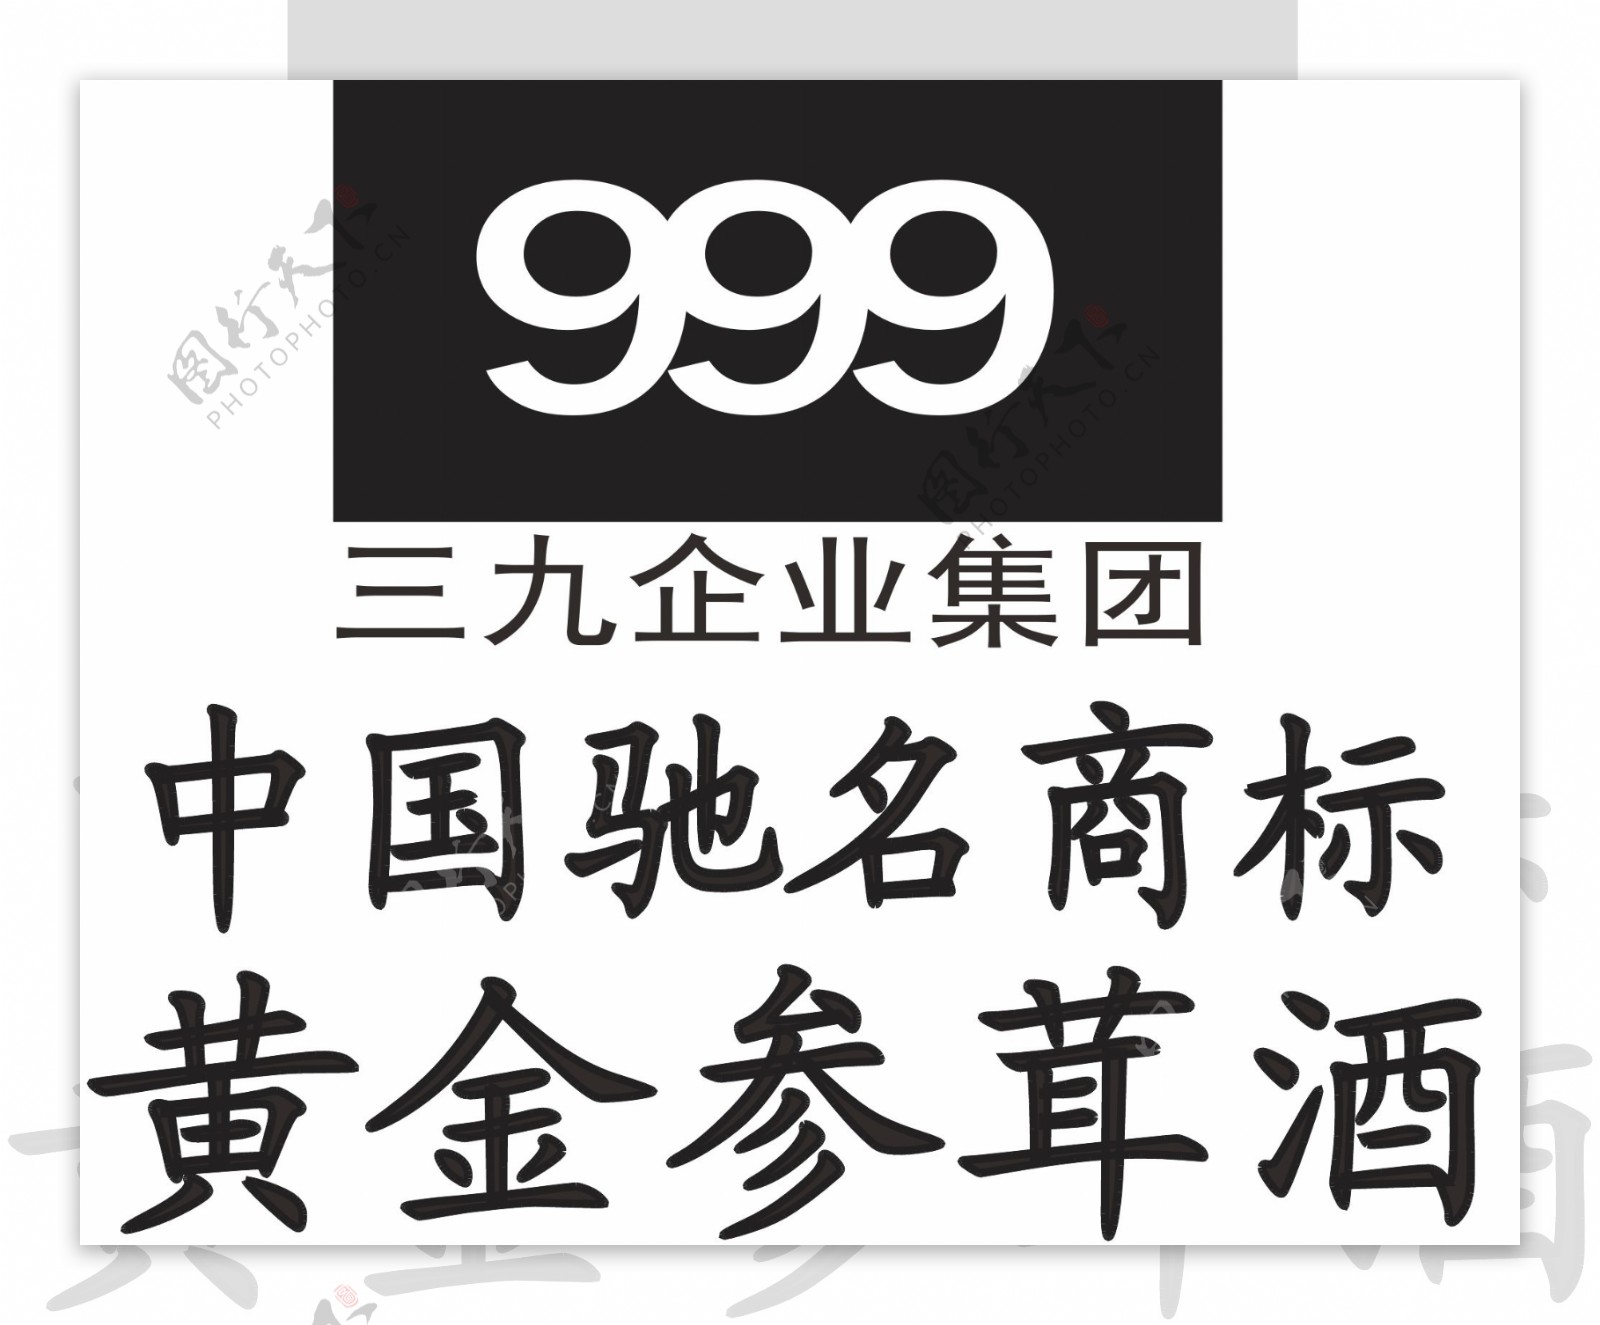 三九企业集团logo